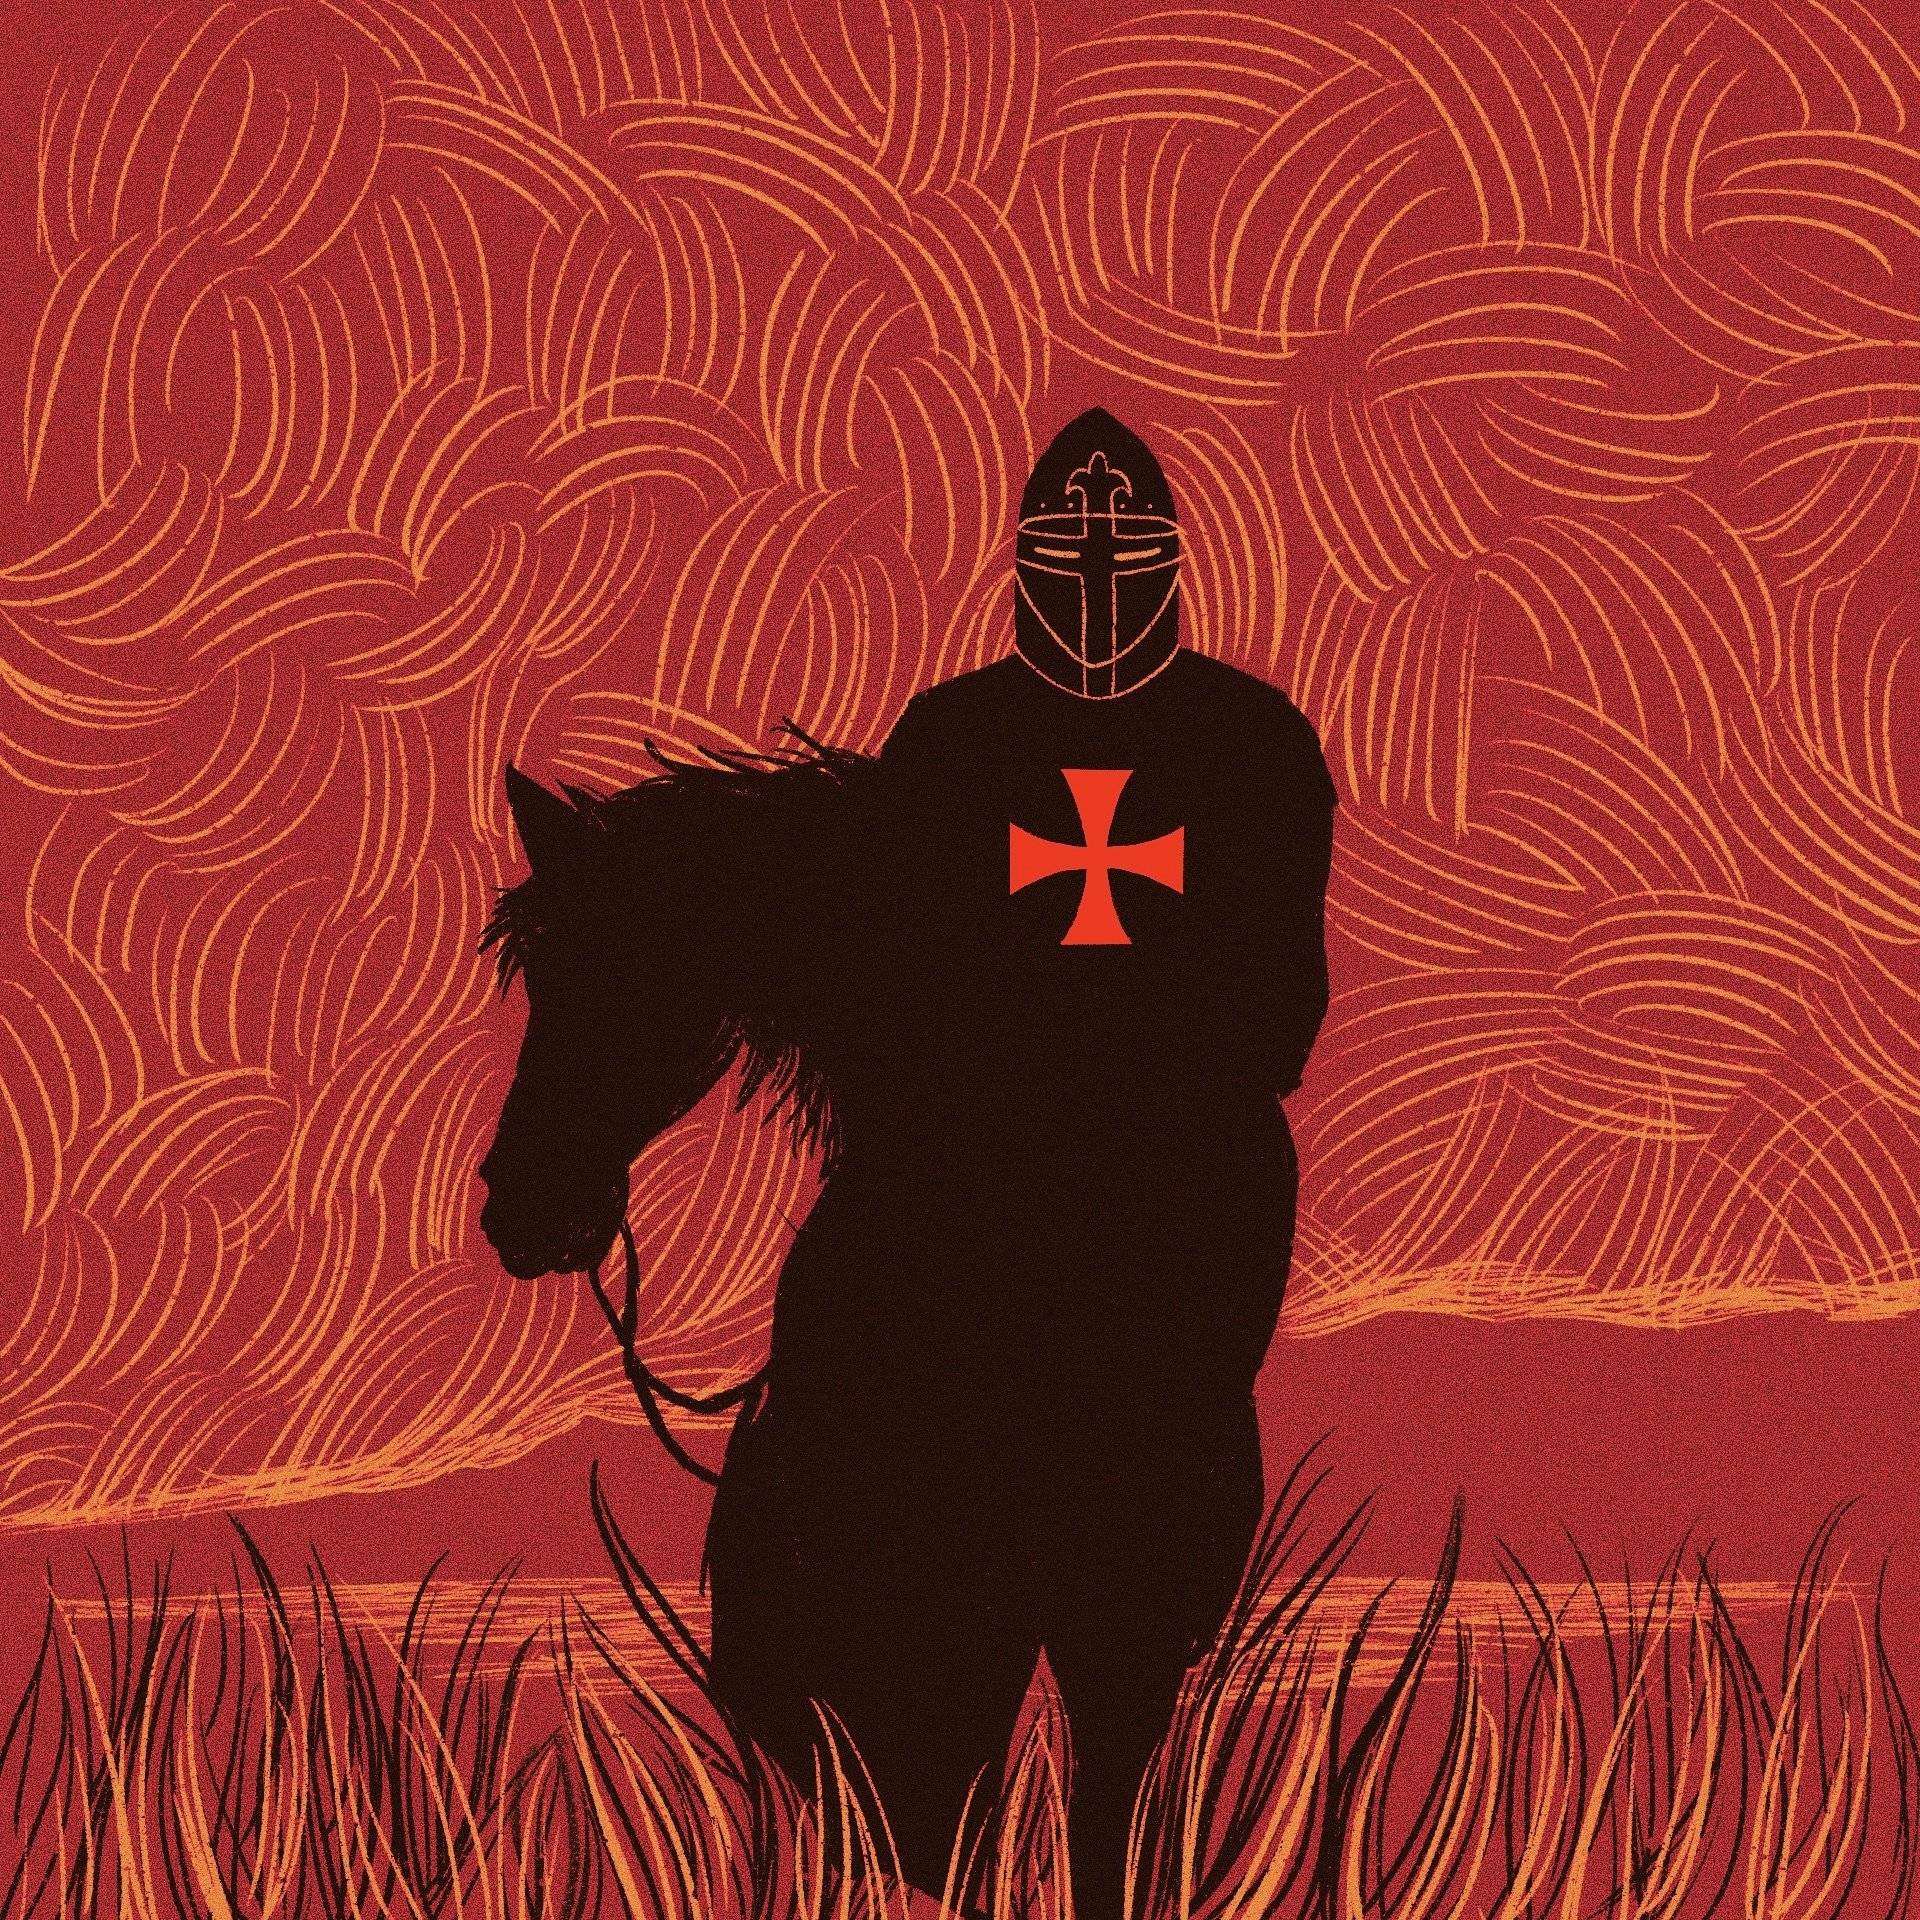 Na czerwonym tle ciemna postać z czerwonym krzyżem na piersi